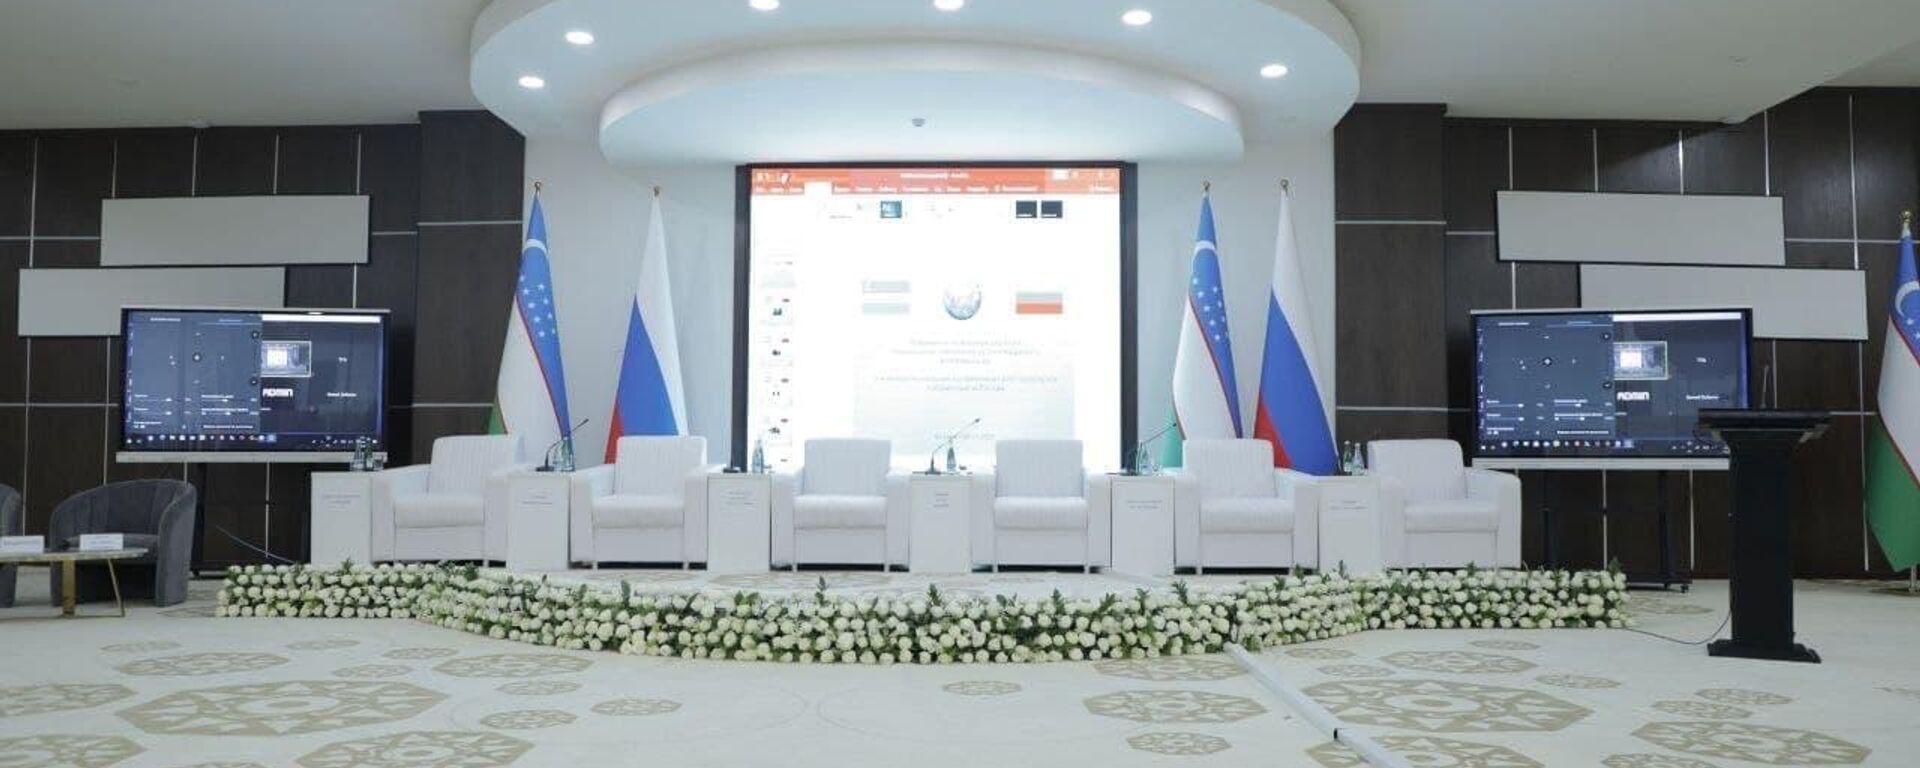 Третья межрегиональная конференция ректоров вузов Узбекистана и России в Бухаре - Sputnik Узбекистан, 1920, 11.06.2021